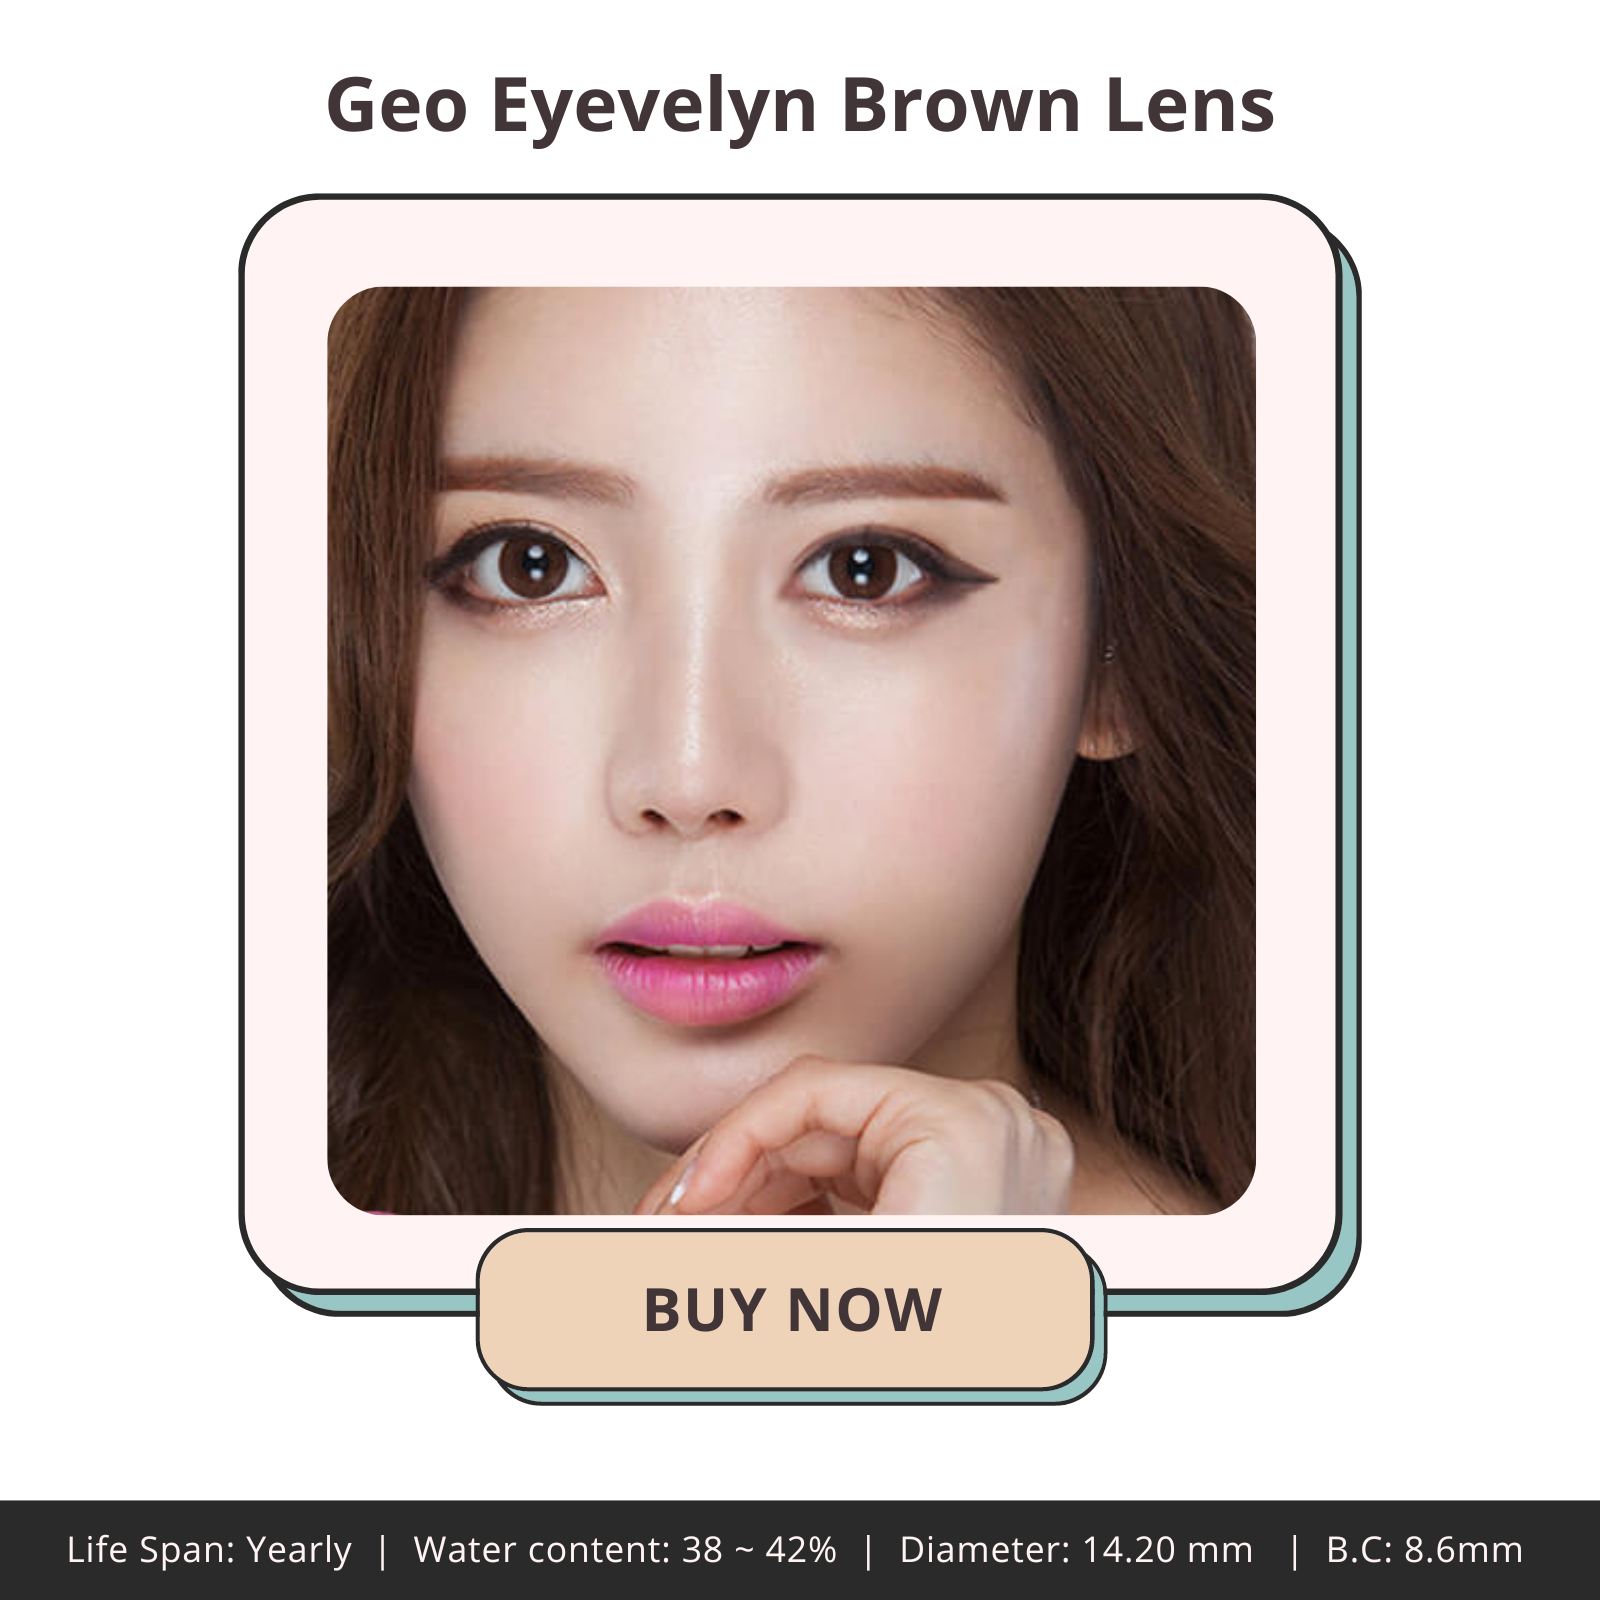 Geo Eyevelyn Brown Lens